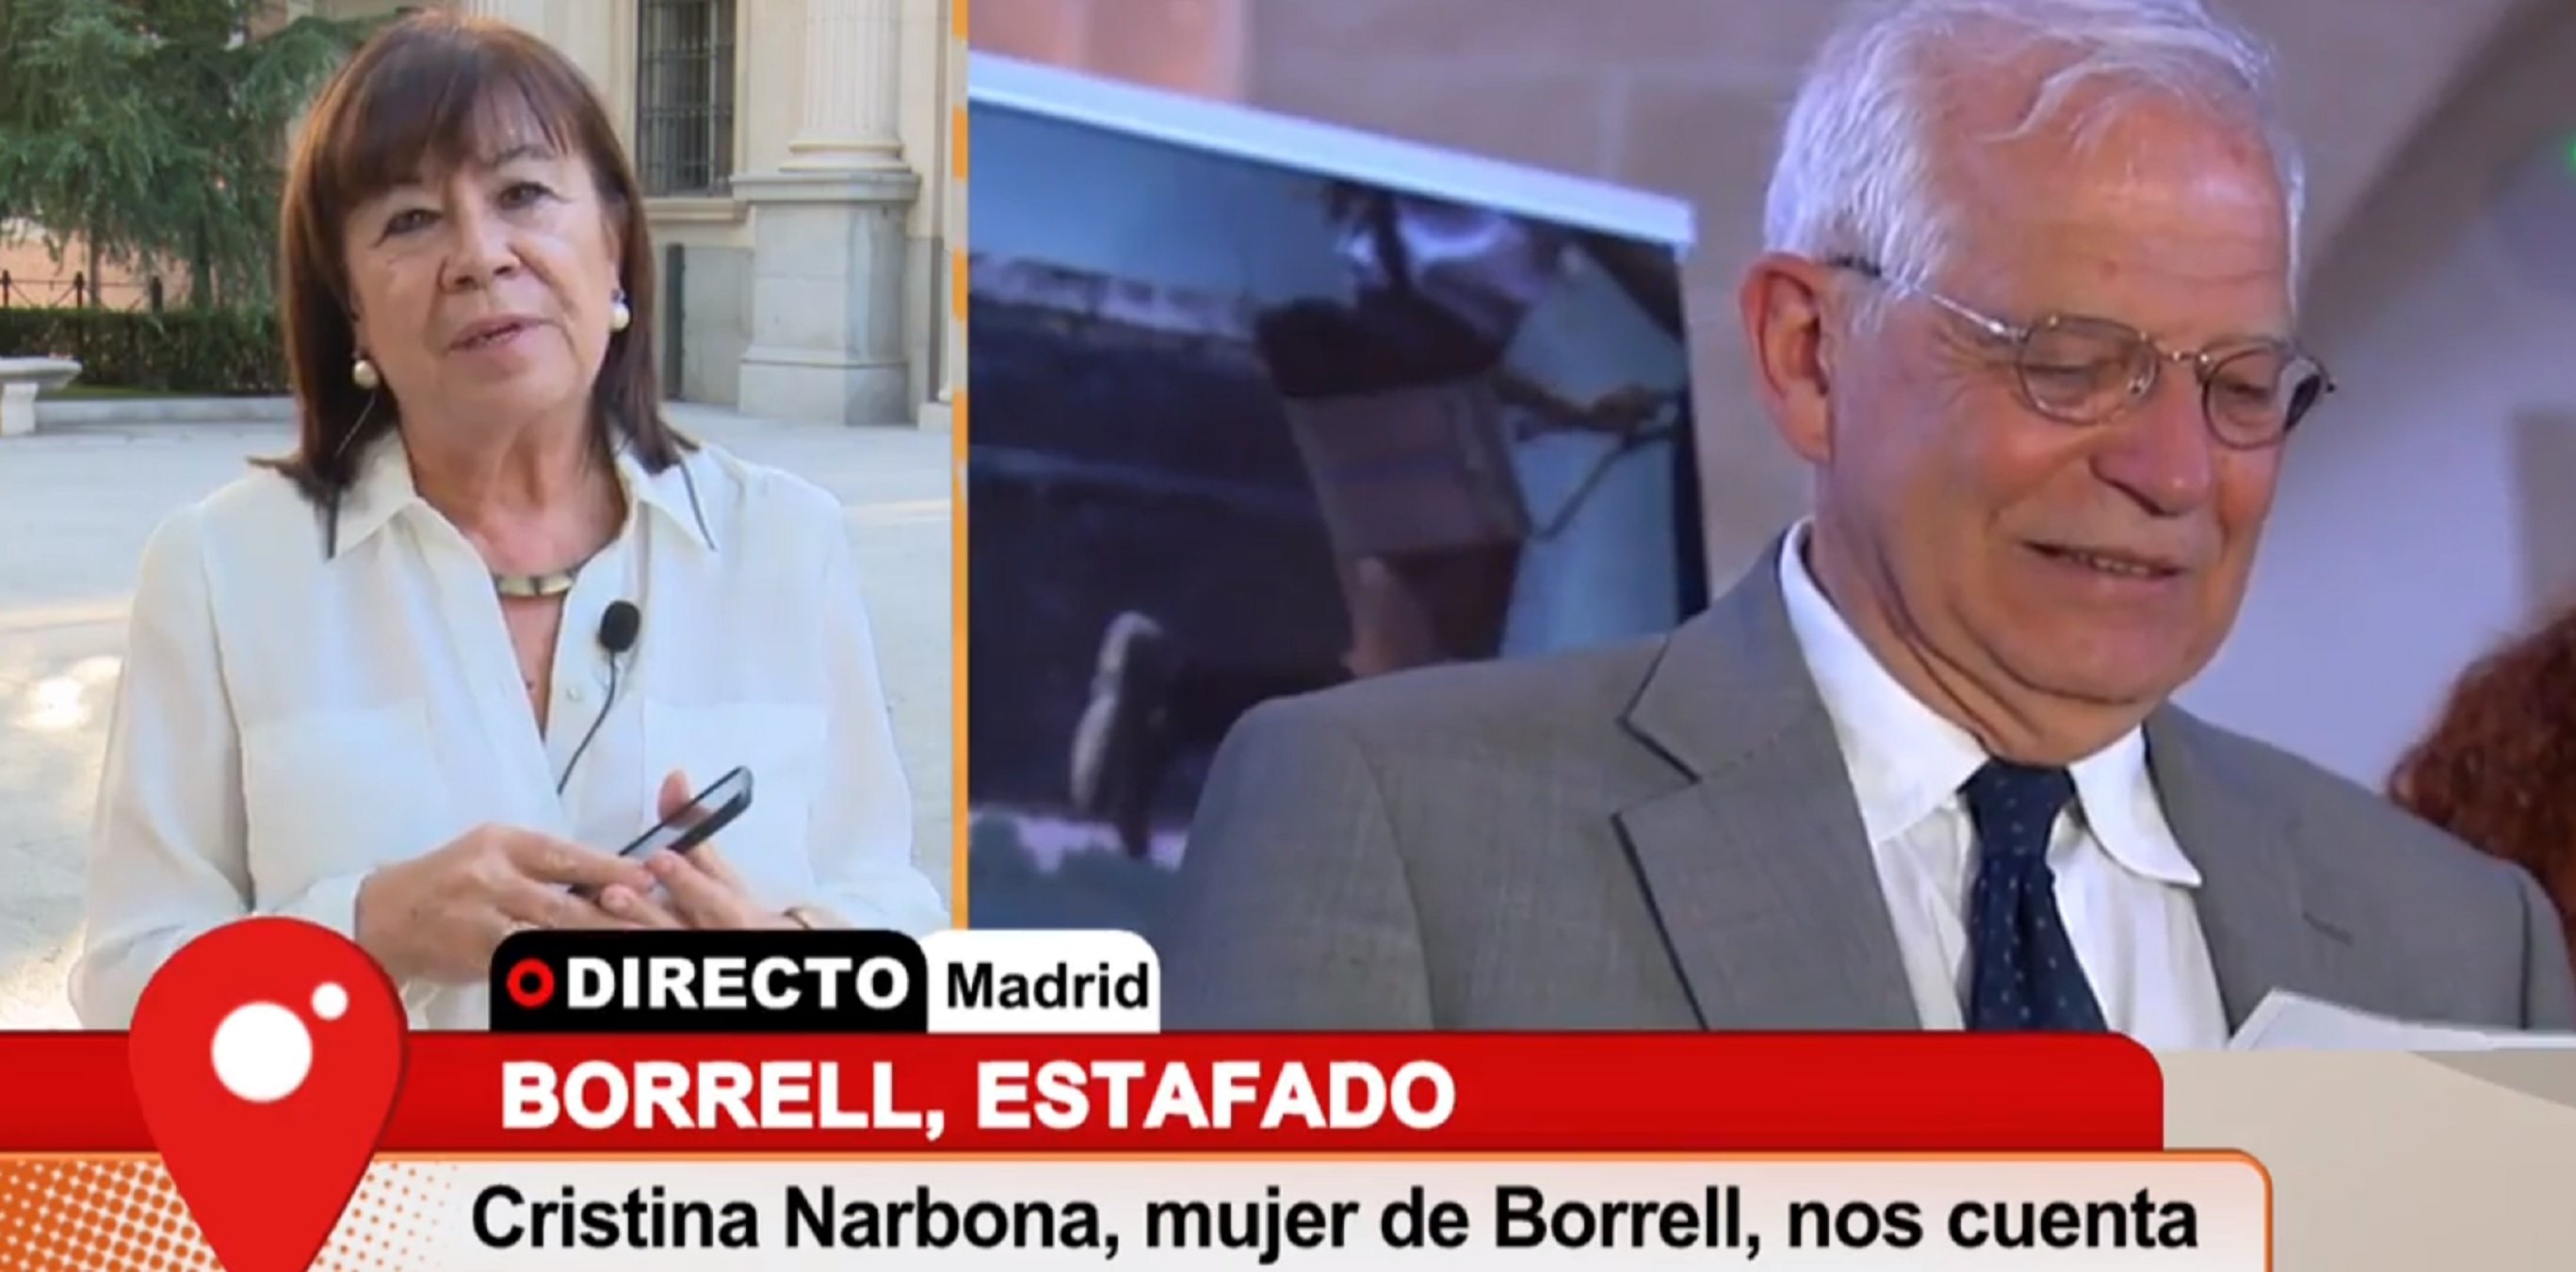 Masclisme a Telecinco, rètol del càrrec de Cristina Narbona: "mujer de Borrell"